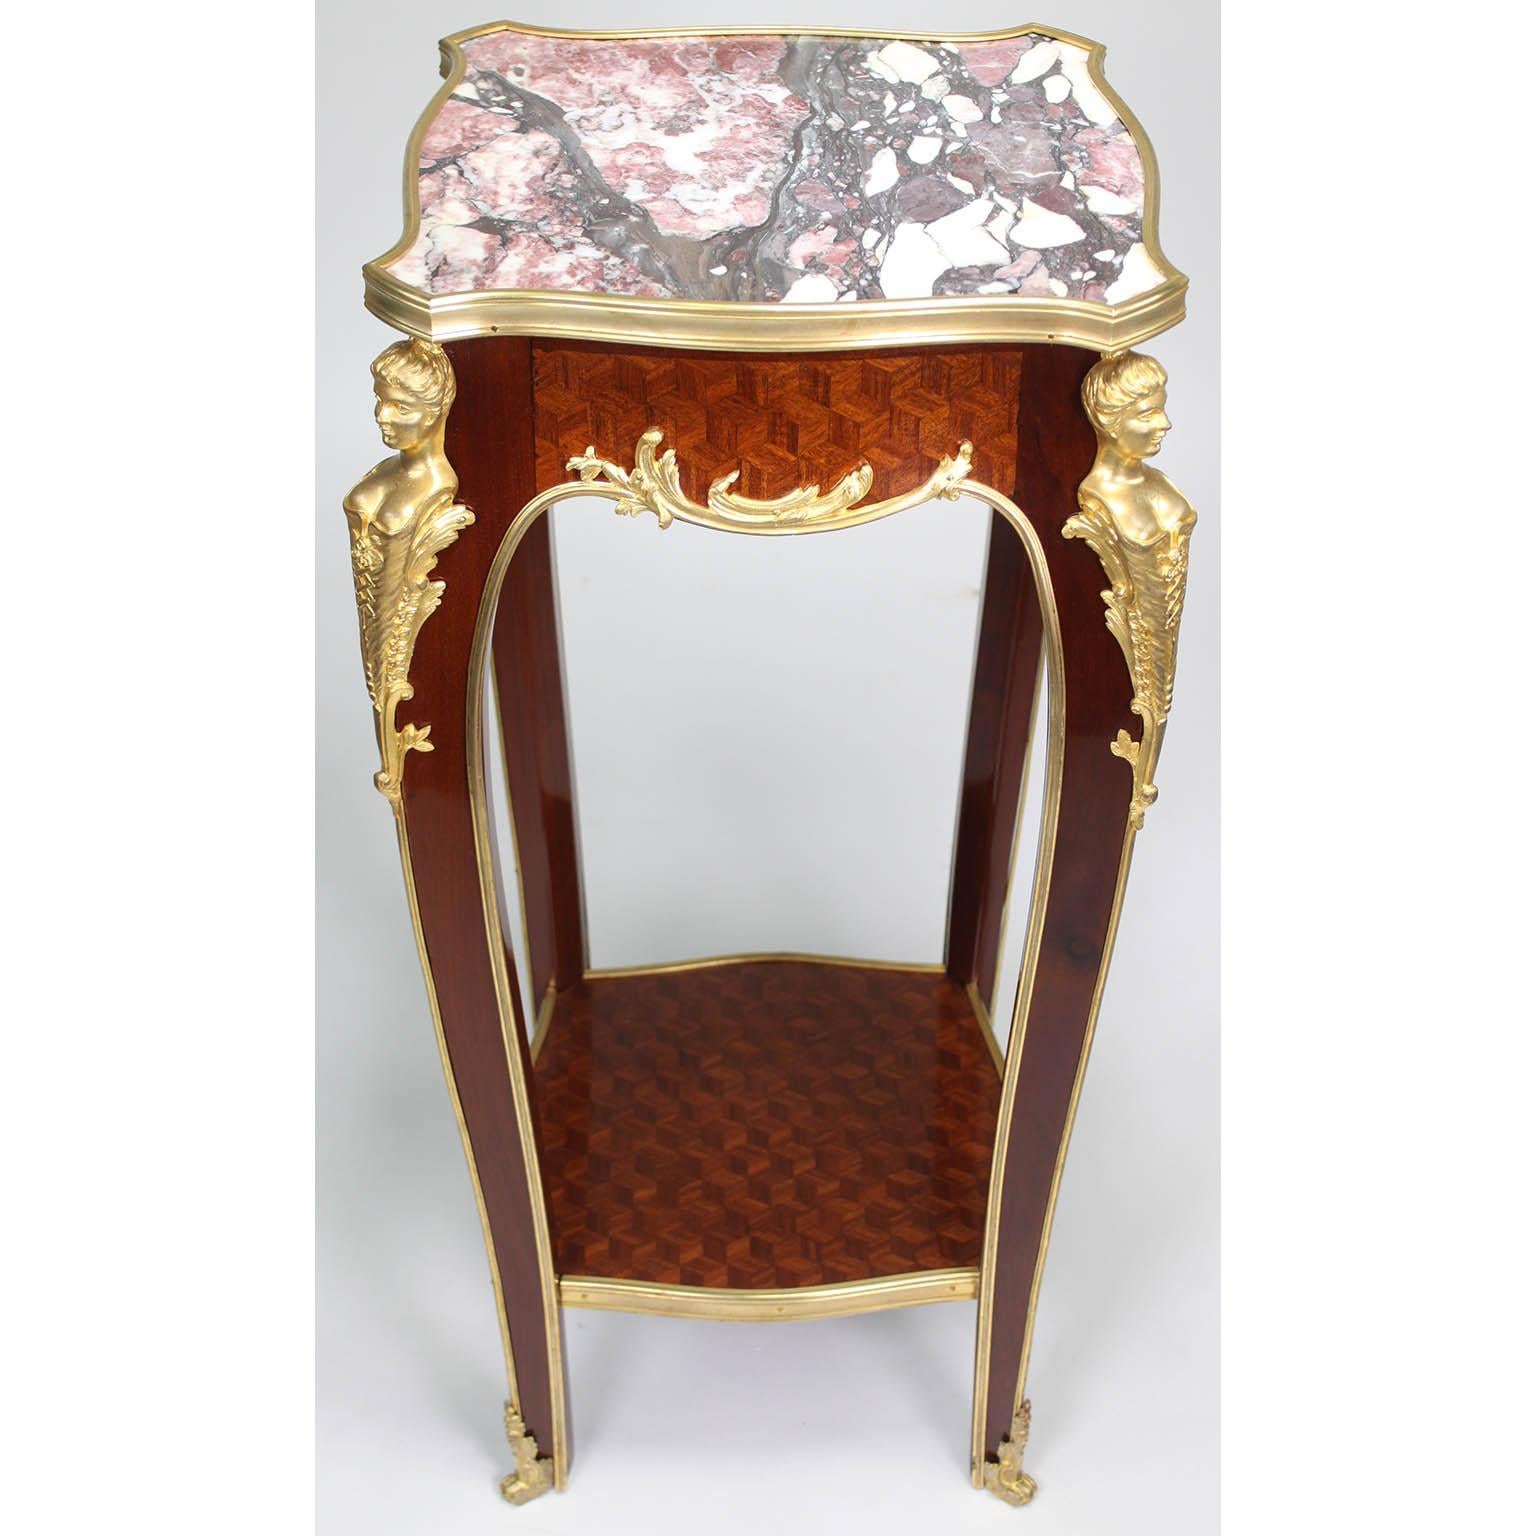 Ein feines französisches Mahagoni im Stil Louis XV des 19. und 20. Jahrhunderts,  Beistelltisch aus Satinholz und vergoldeter Bronze (Ormolu) von François Linke (1855-1946). Der quadratische Tisch ist mit einer Platte aus Brêche Violette-Marmor mit